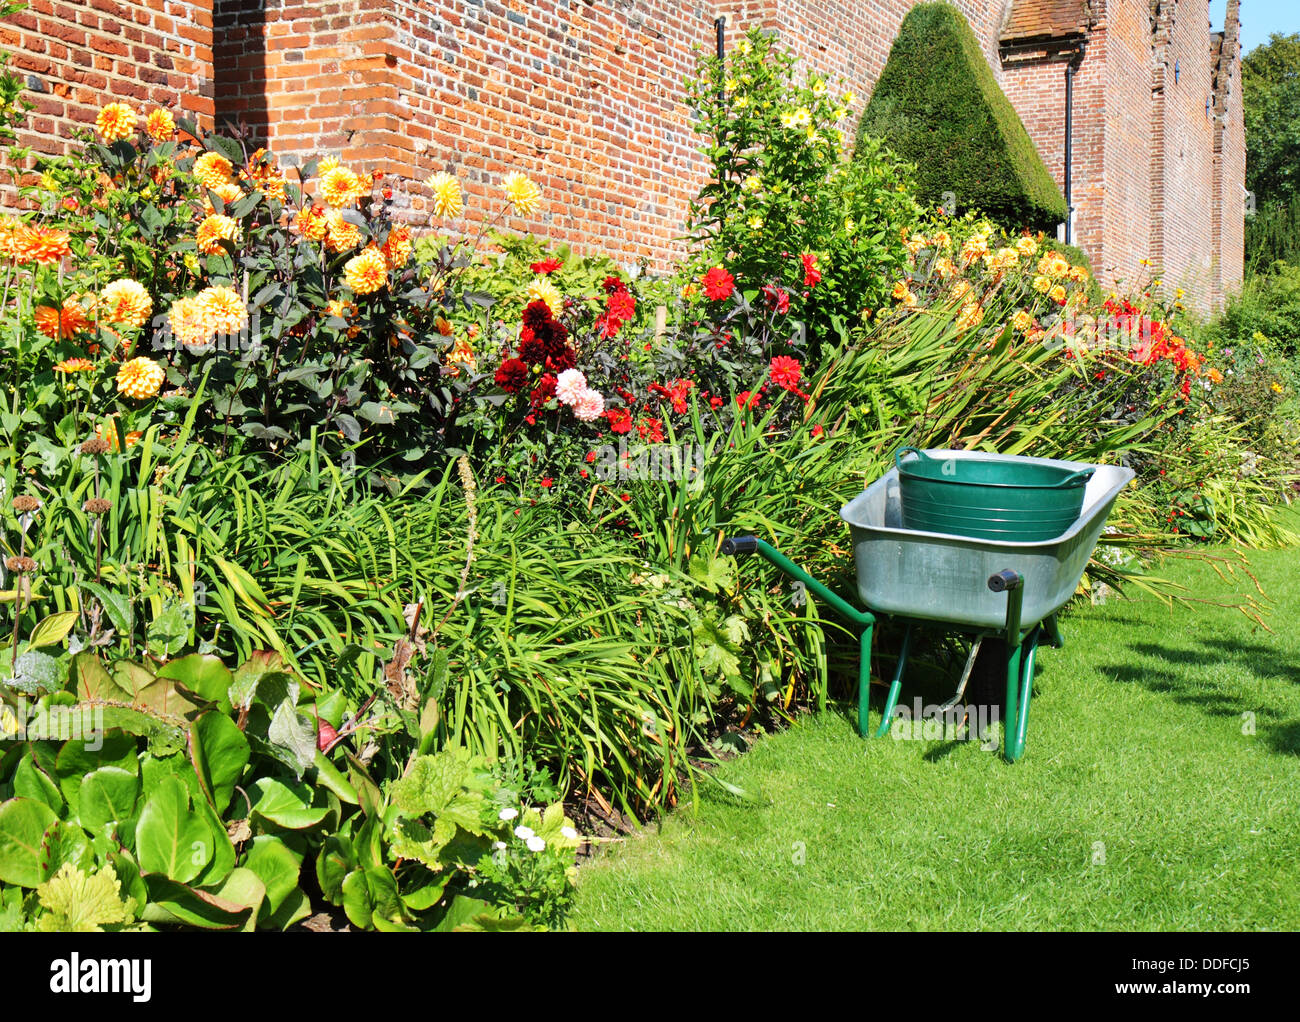 Carretilla de mano aparcado al lado de una frontera de coloridas flores de verano en un jardín inglés Foto de stock